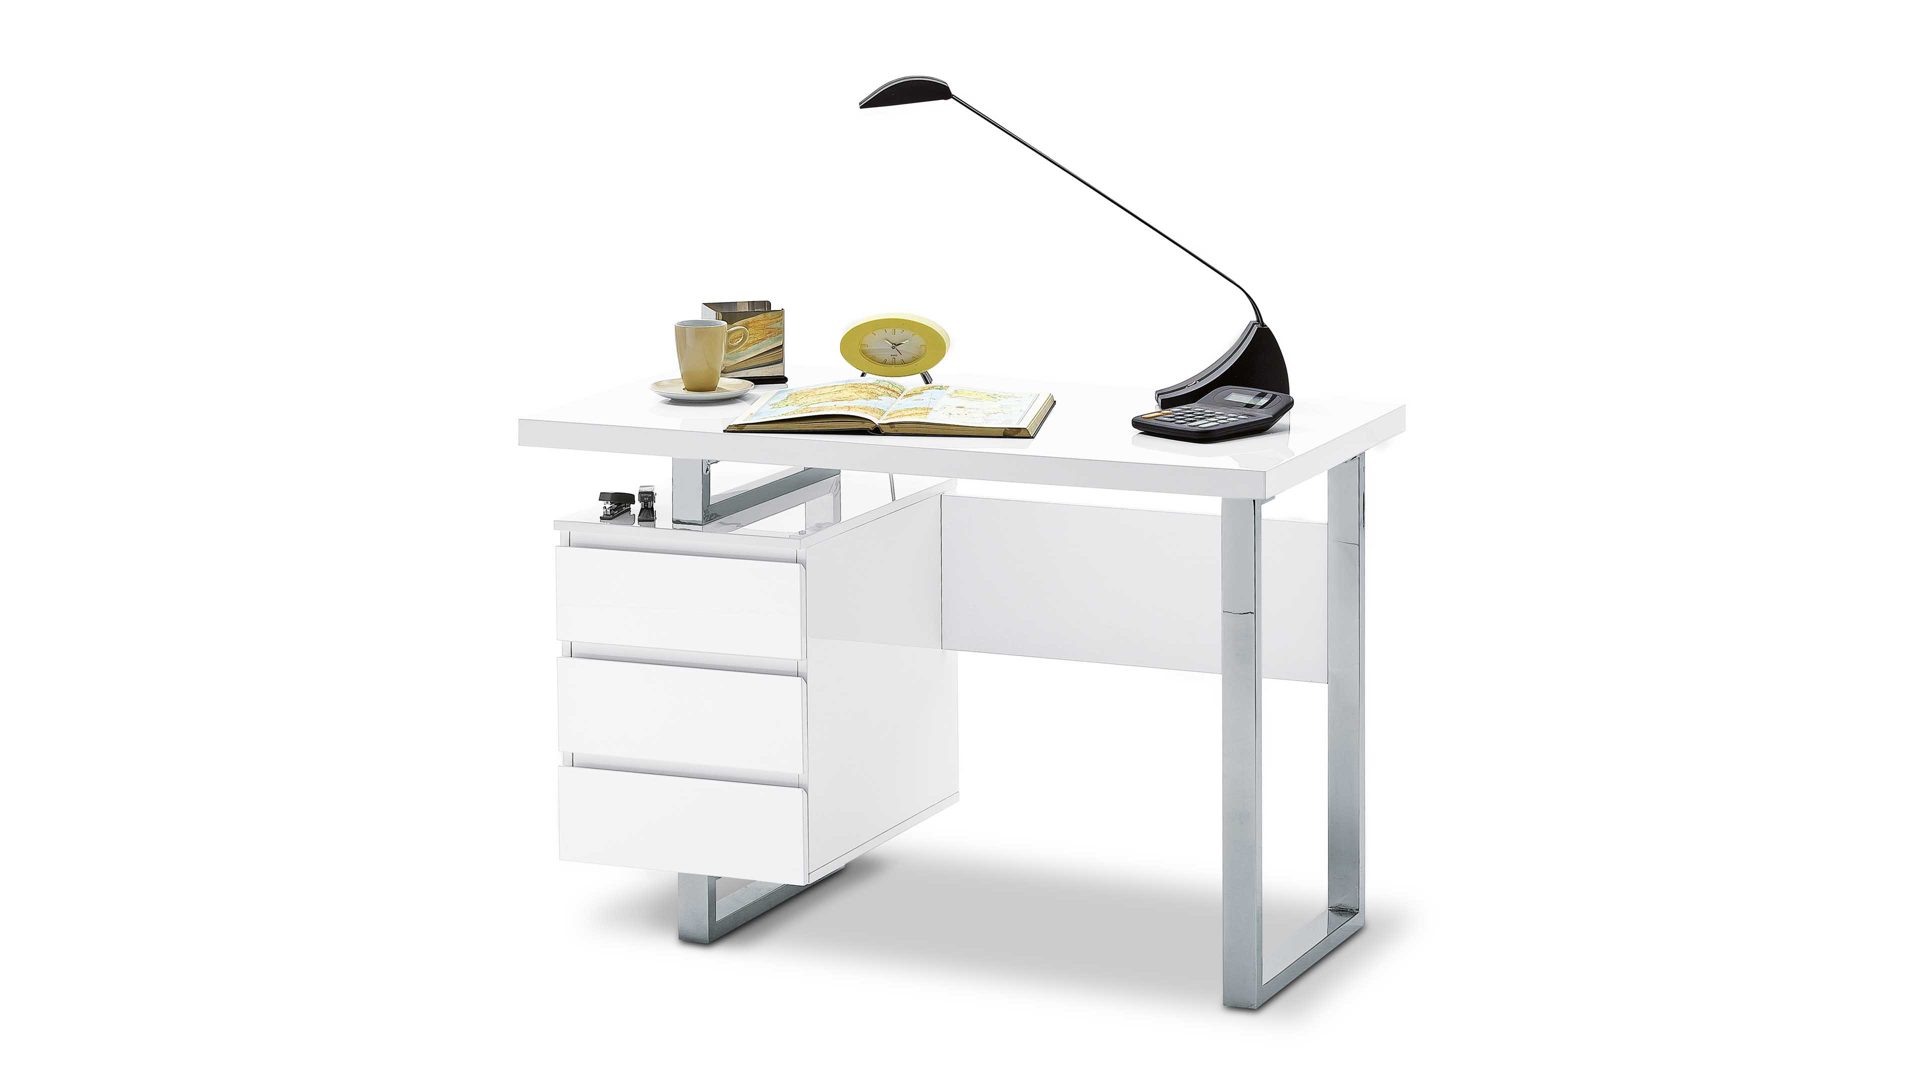 Computertisch Mca furniture aus Holz in Weiß Schreibtisch bzw. Bürotisch auch für kleine Büros  verchromtes Gestell & weiße Hochglanzoberflächen – ca. 115 x  60 cm